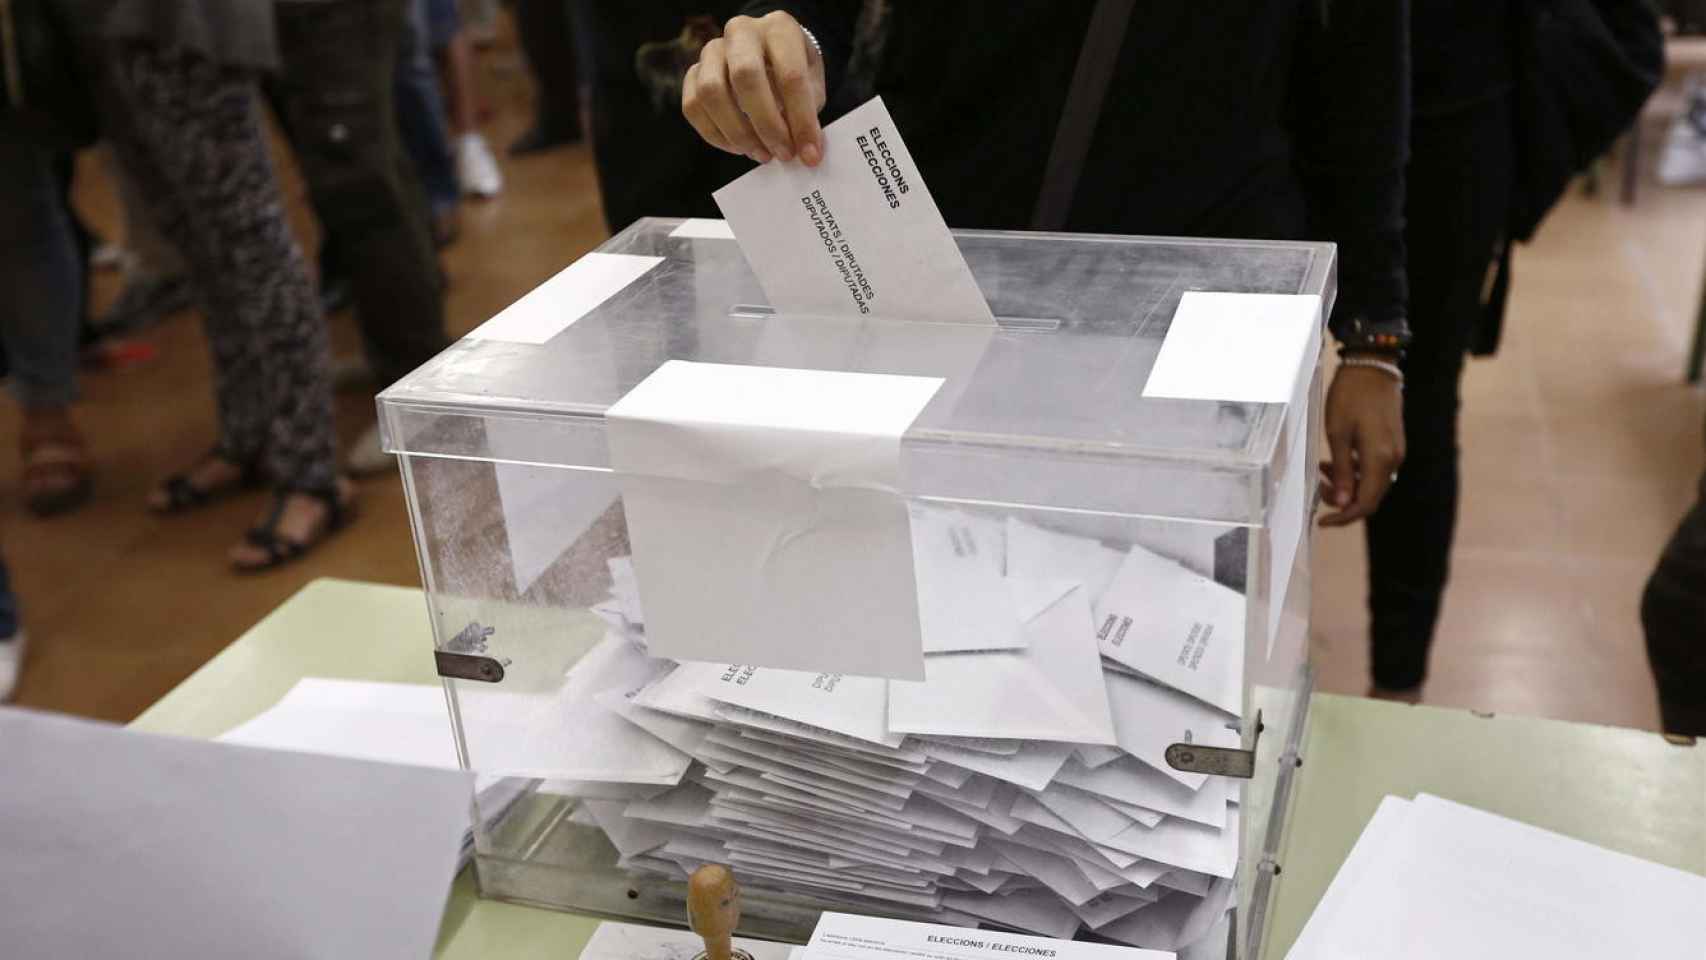 Un votante coloca un sobre en una urna durante las elecciones en Barcelona / EFE